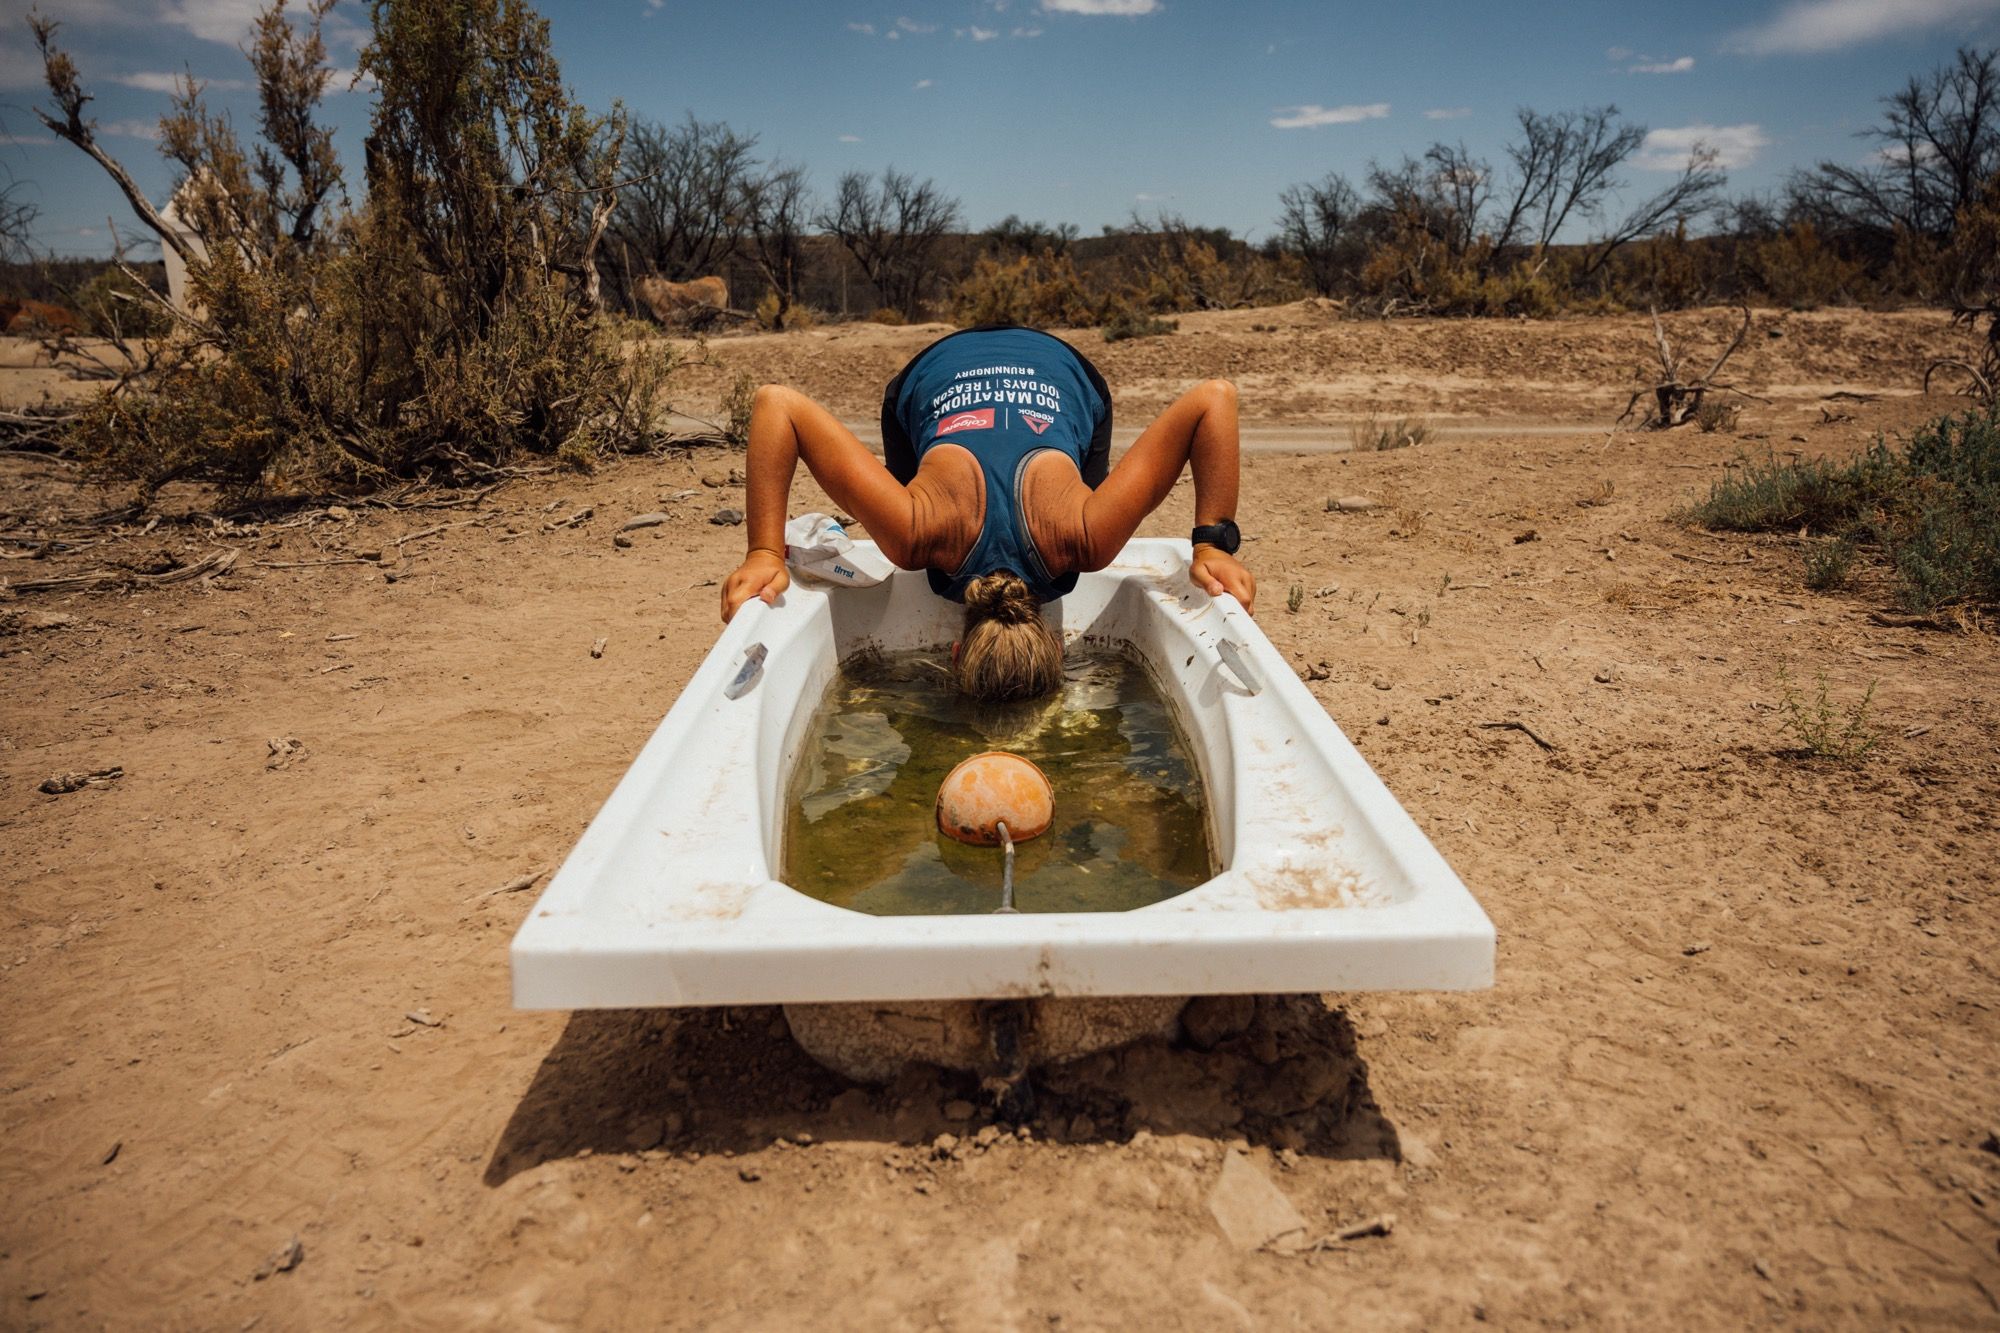 Mina Guli's Lauf gegen die Wasserknappheit